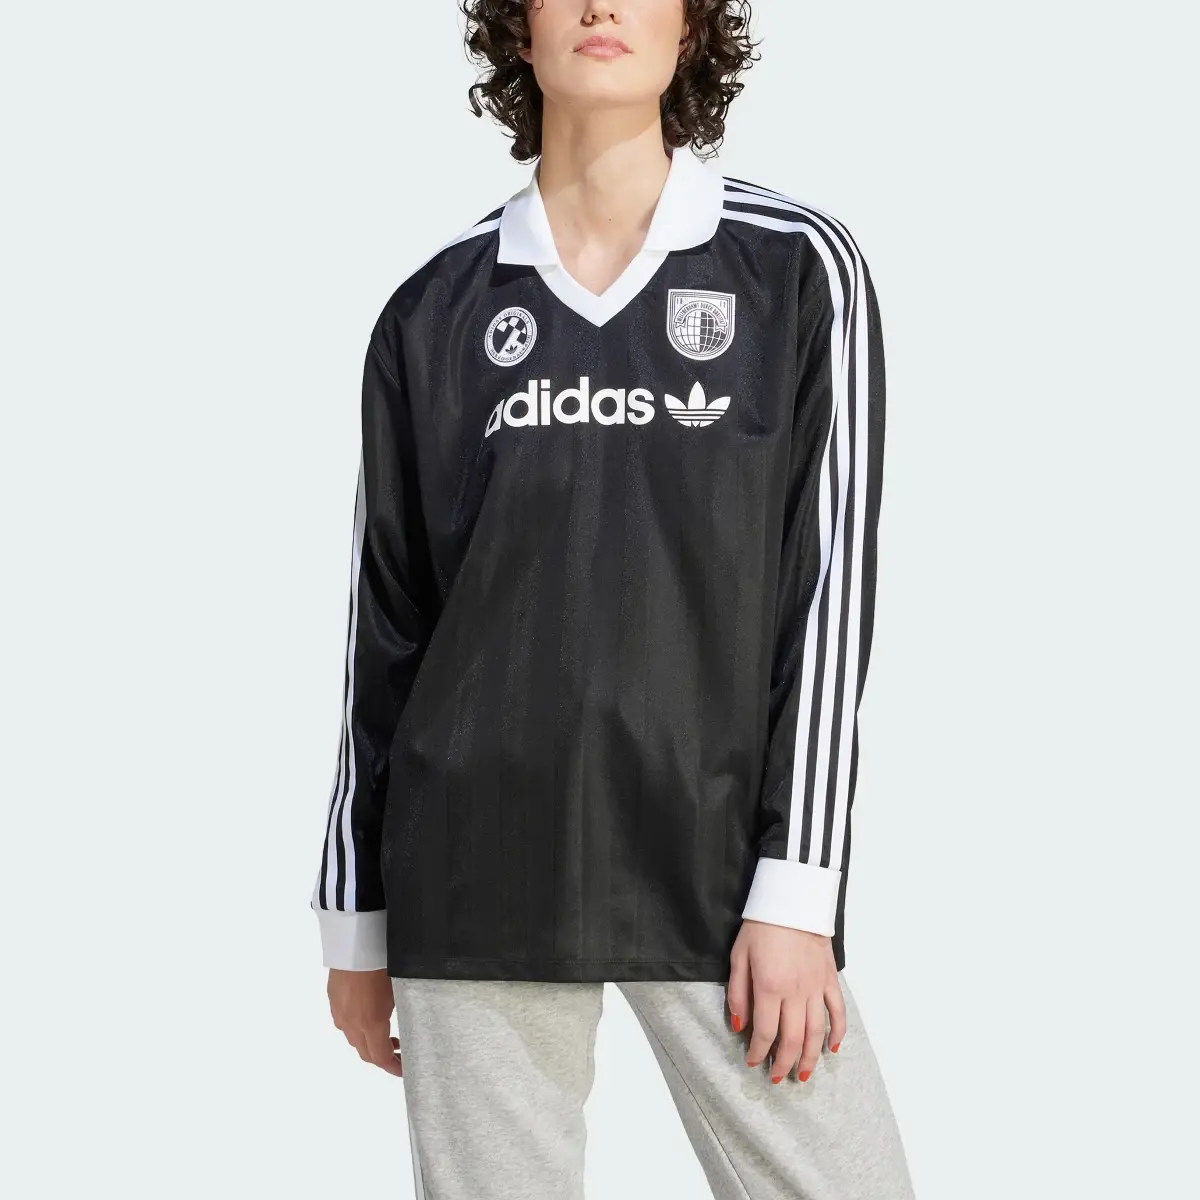 Adidas Football Long-Sleeve Top. 1